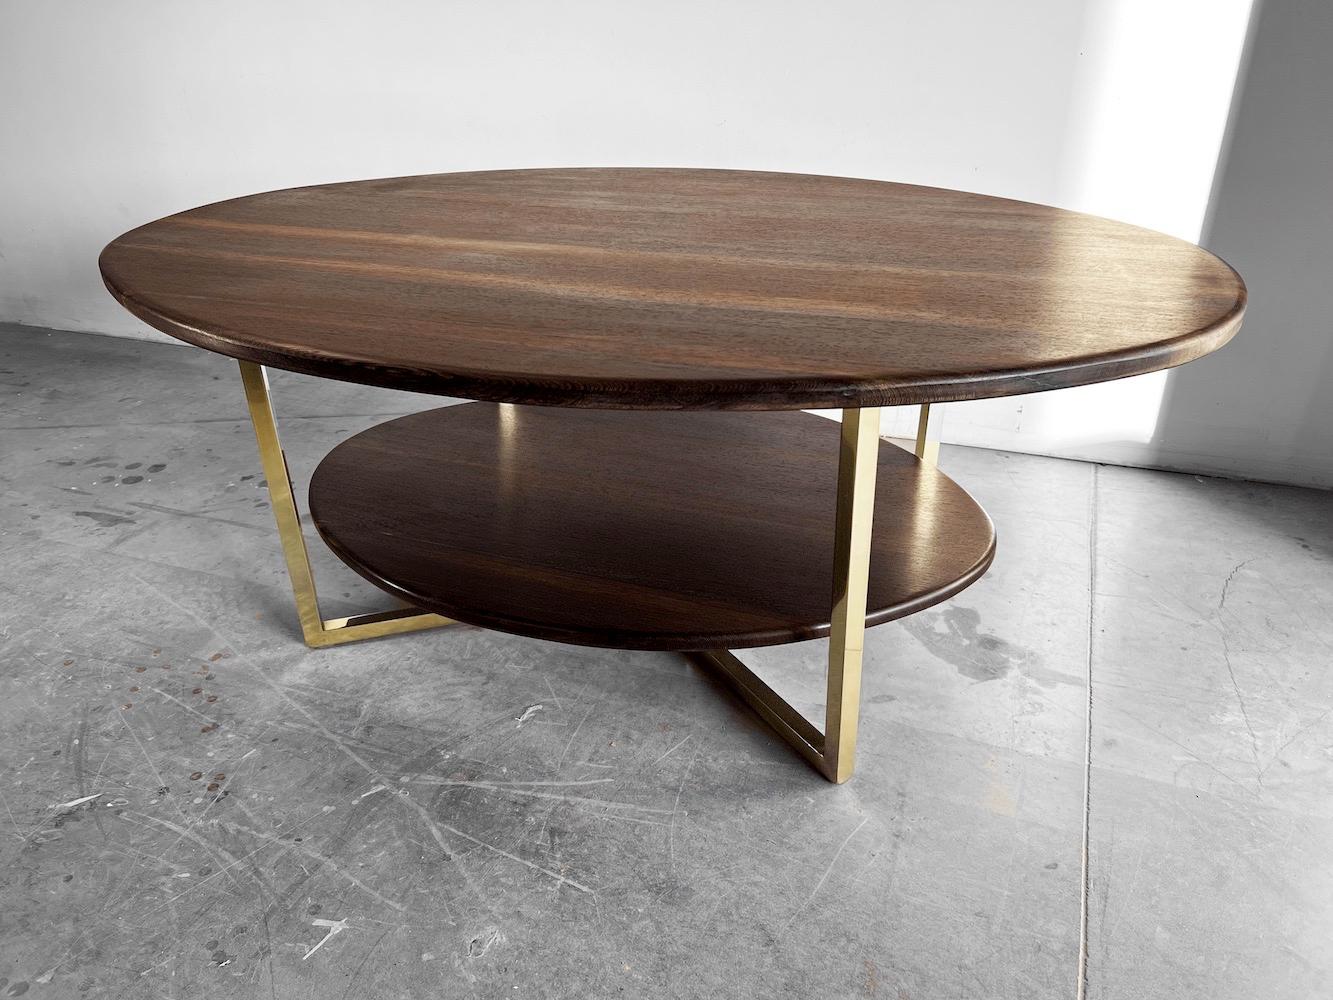 La Safari est une table basse ovale à deux niveaux, entièrement fabriquée à la main. Cette pièce s'inspire de l'univers des anciennes bibliothèques anglaises, avec leurs confortables fauteuils chesterfield et leurs étagères remplies d'ouvrages